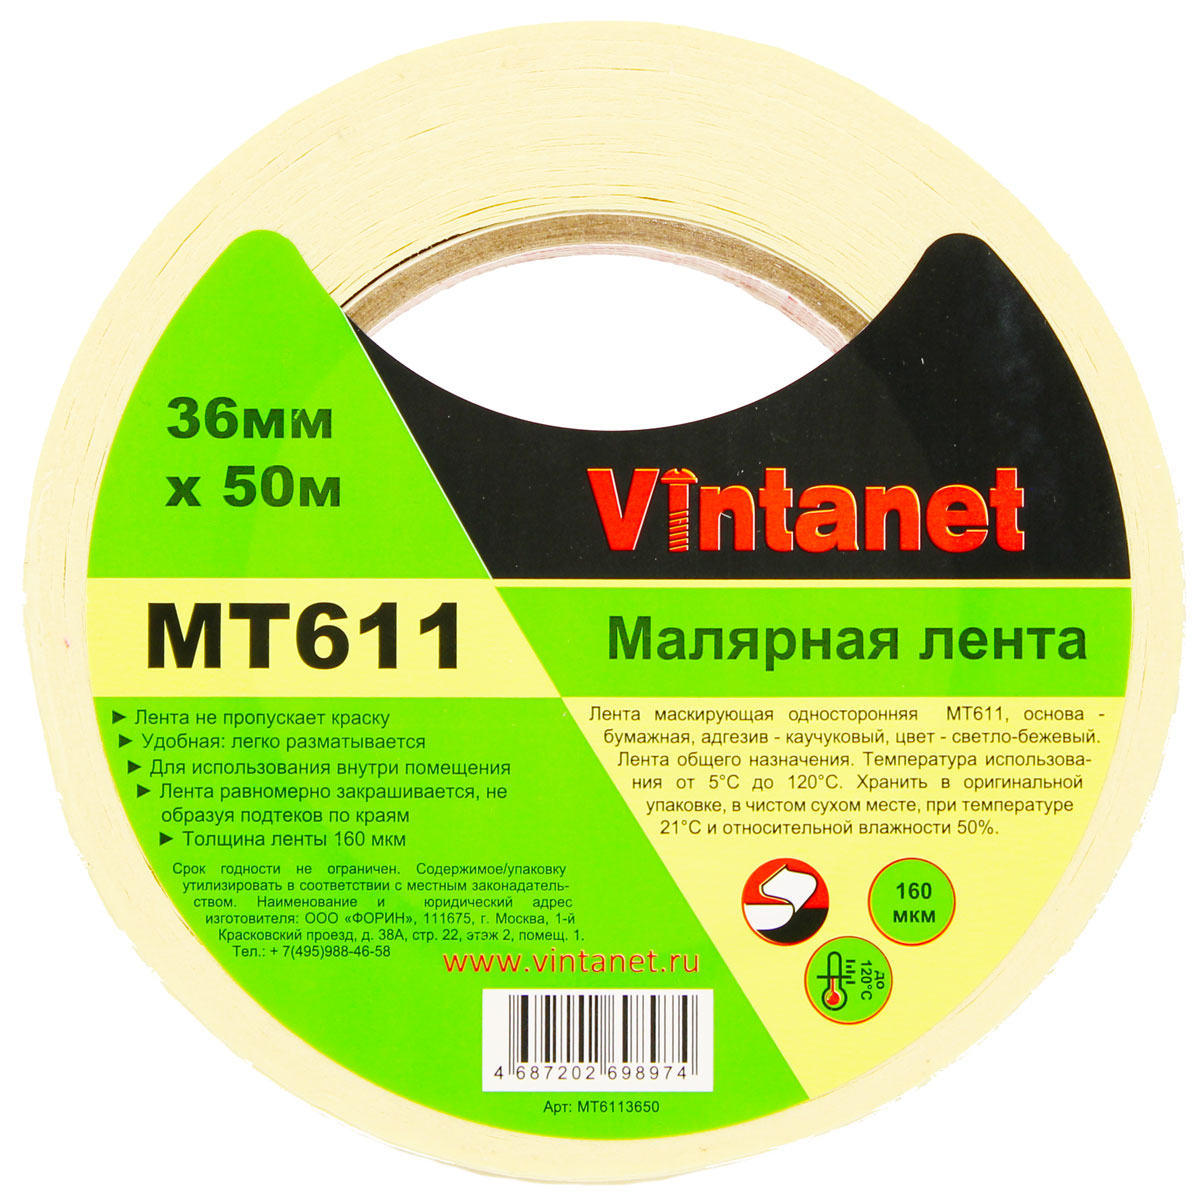 Лента малярная высокотемпературная Vintanet MT611, 120 С, 160 мкм, 36мм х 50м, MT6113650